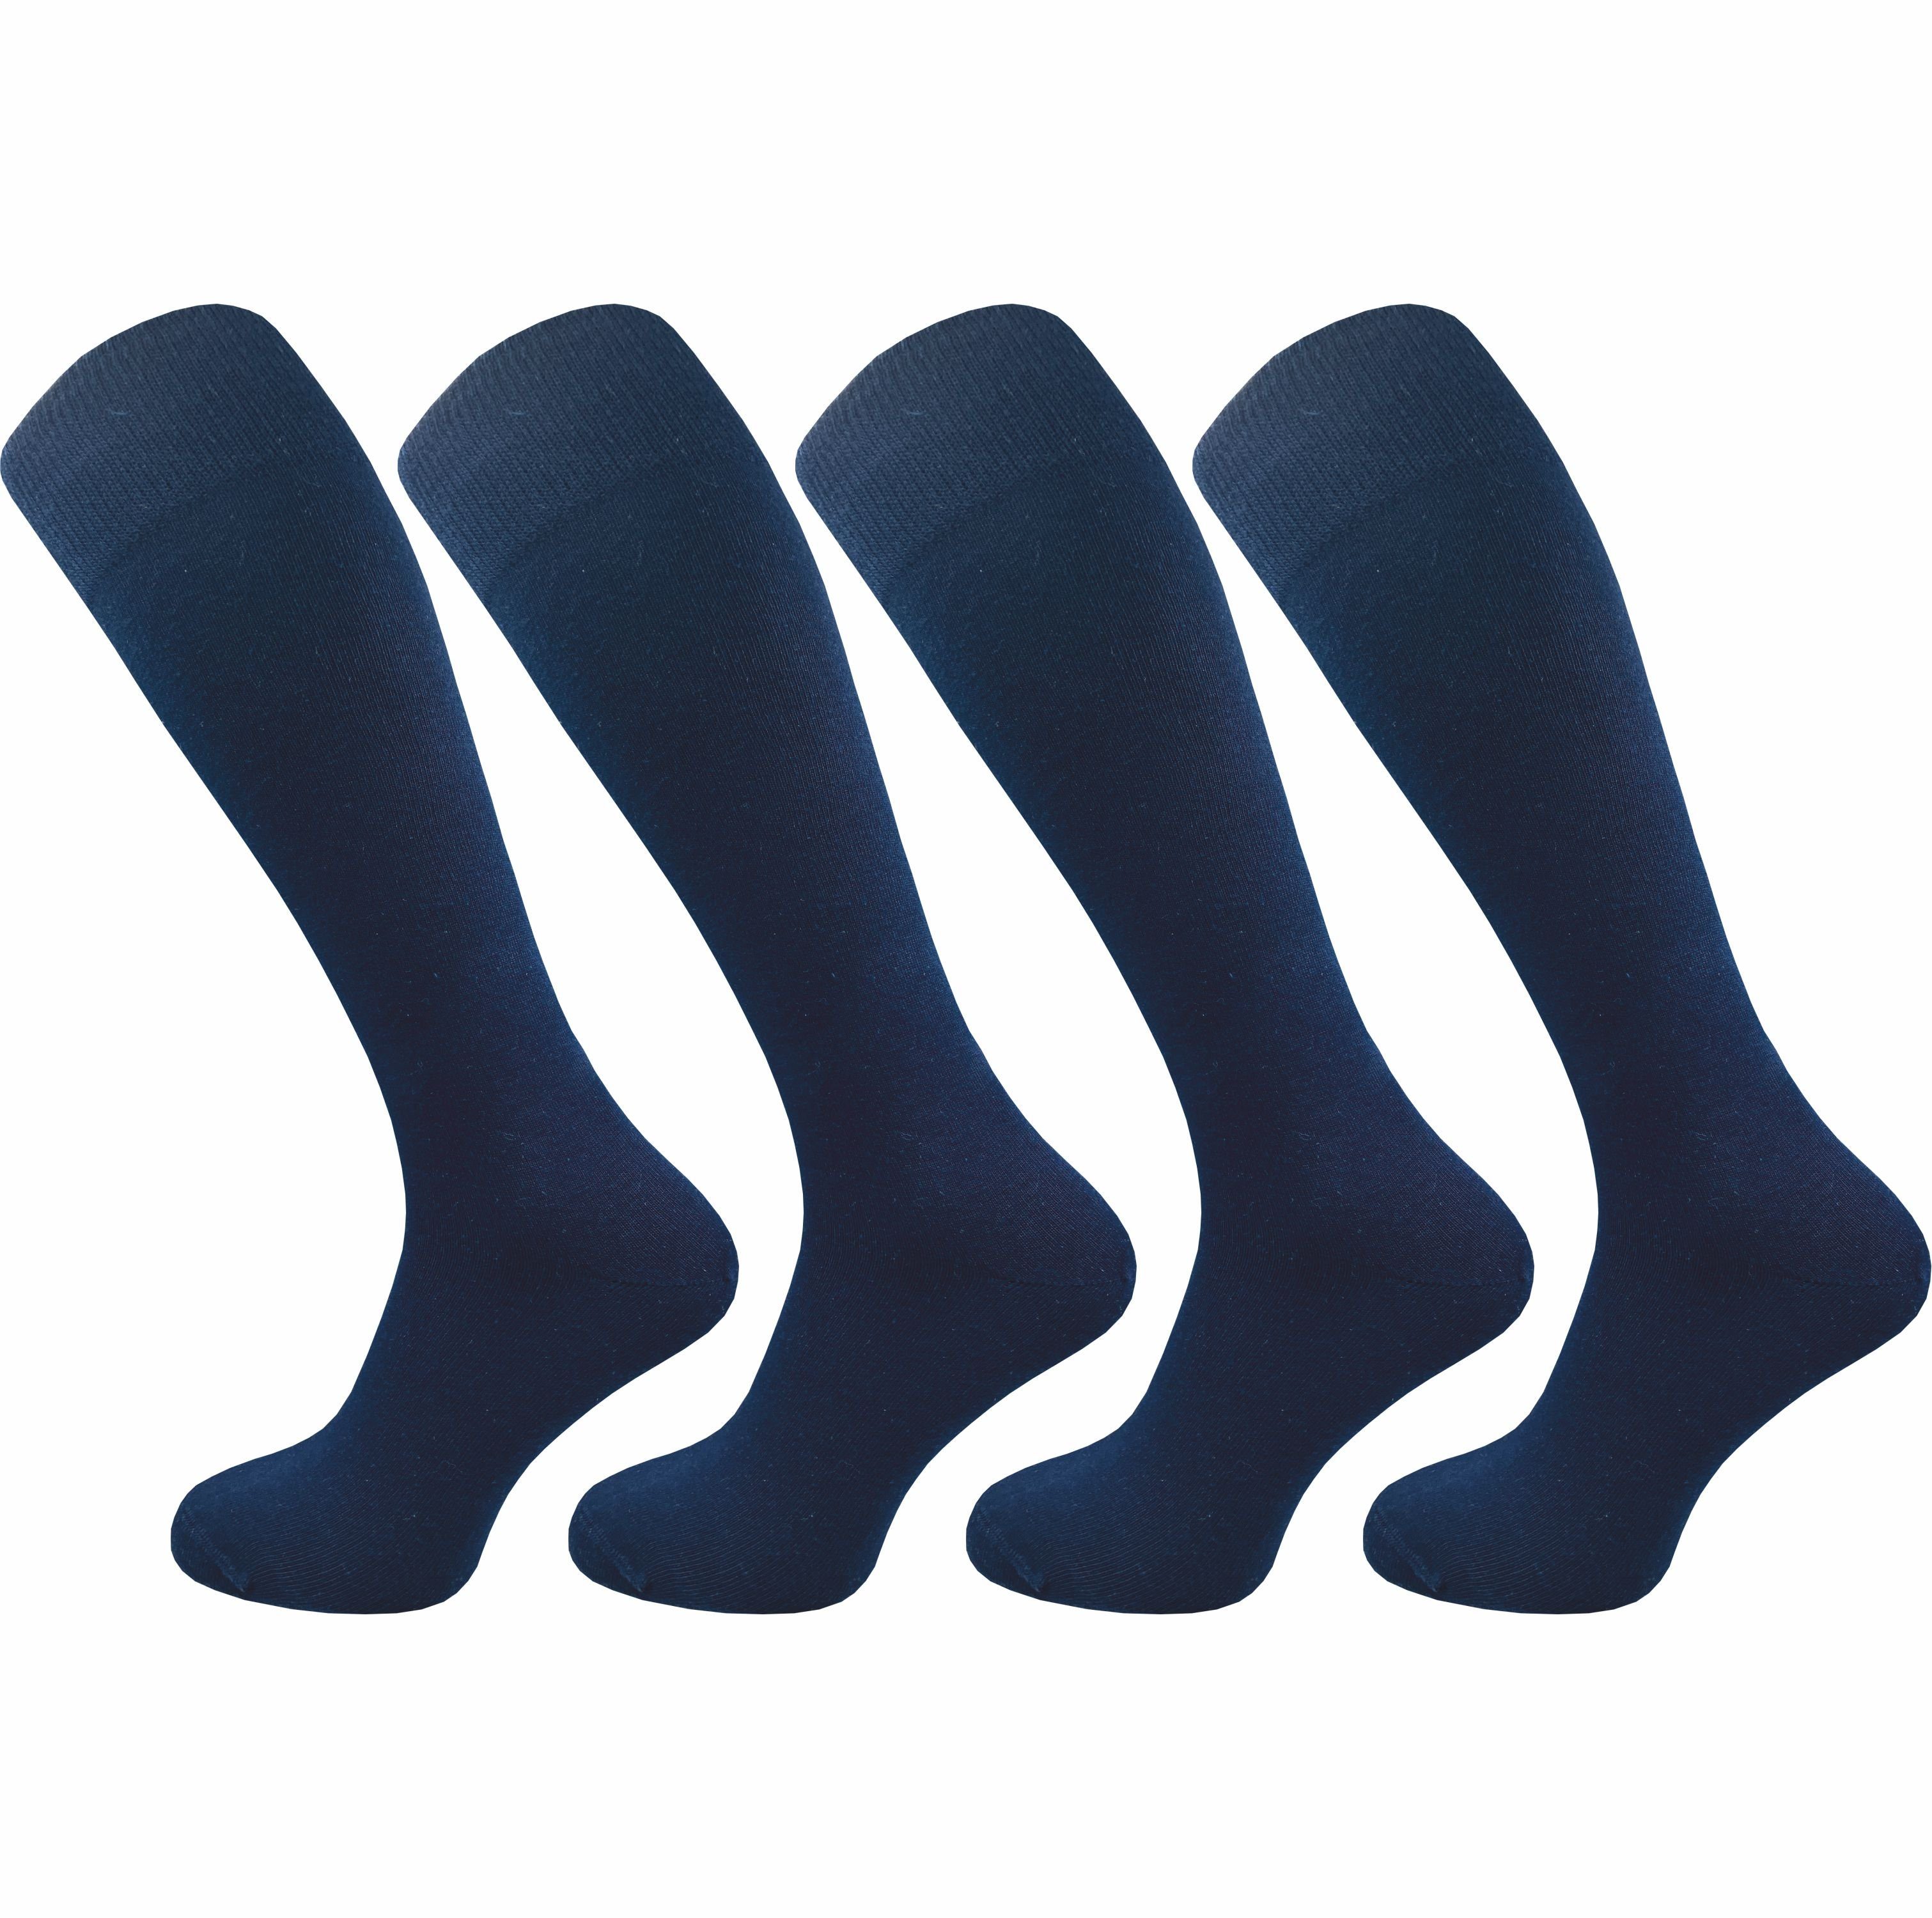 für - Paar) ohne mit Kniestrümpfe Baumwolle Herren aus der Lange GAWILO weich nicht einschneidet Naht & extra speziellem (4 drückende Komfortbund, Socken